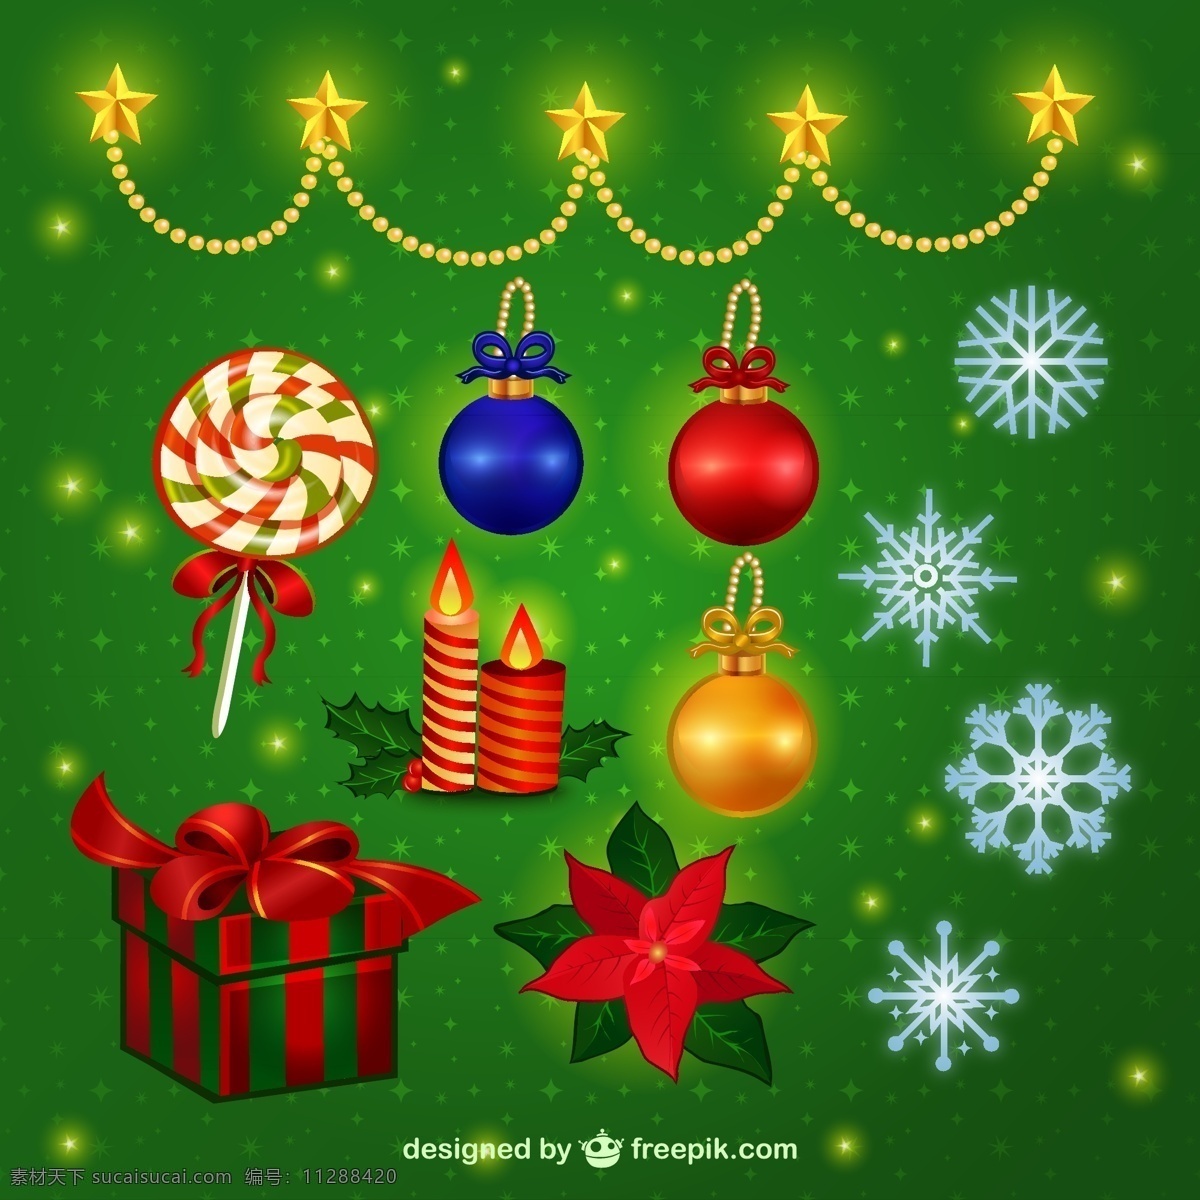 精美 圣诞 装饰 挂饰 棒棒糖 蜡烛 礼包 圣诞吊球 圣诞节 矢量图 雪花 金色挂链 槲寄生 节日素材